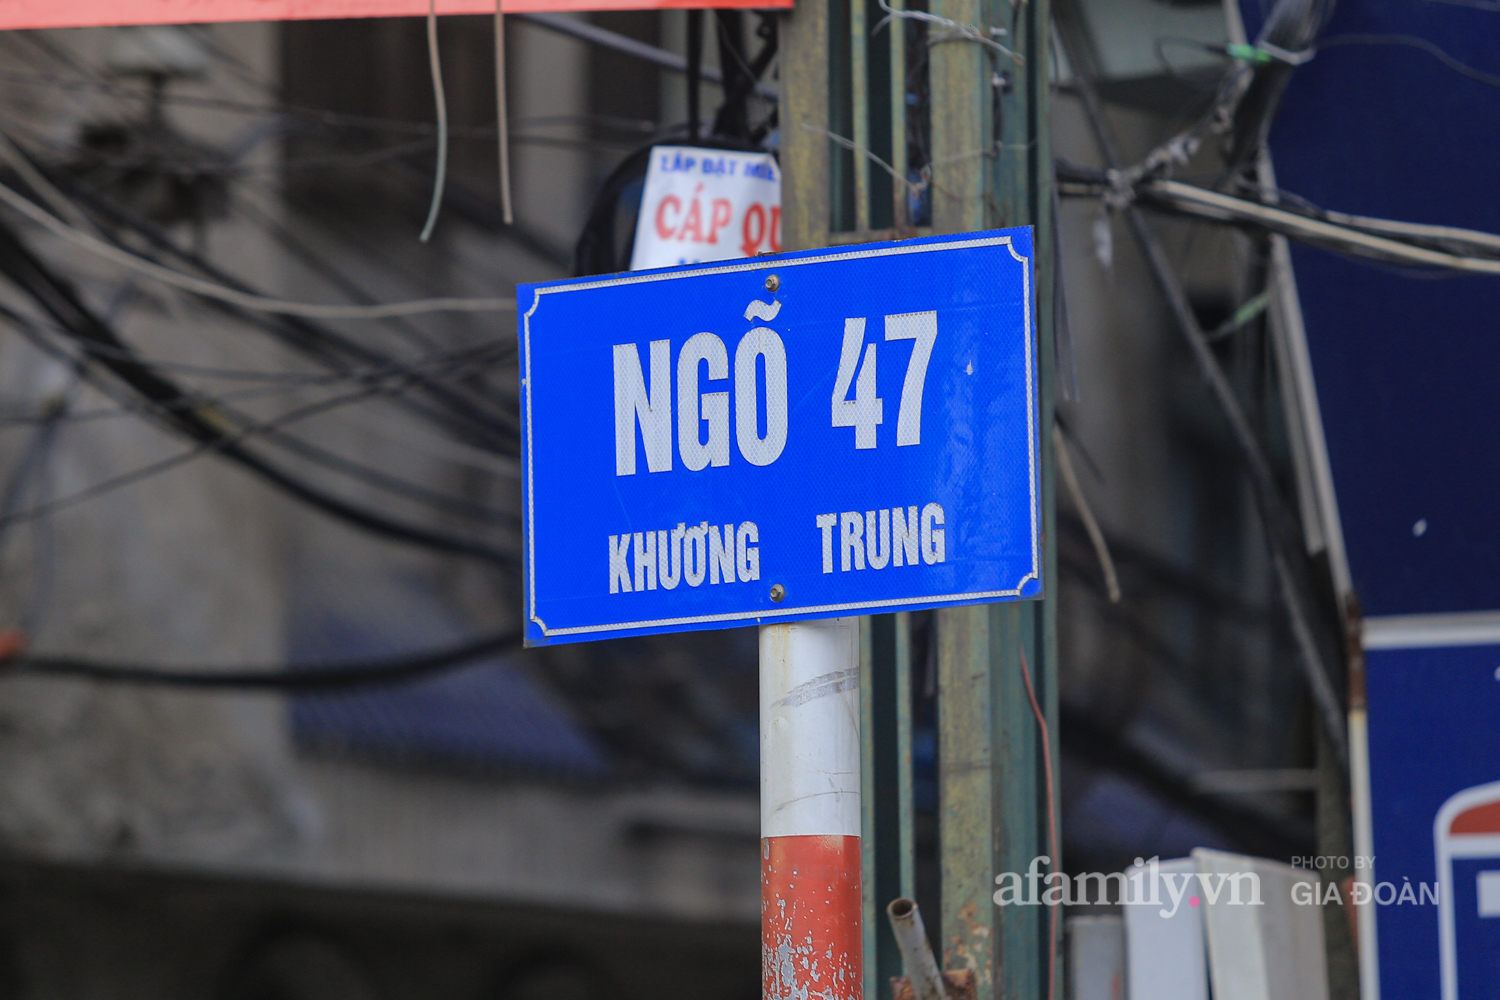 Hà Nội: 22 hộ dân tại ngõ 47 phố Khương Trung bị phong tỏa khi có ca dương tính SARS-CoV-2 làm việc tại công ty T&T - Ảnh 1.